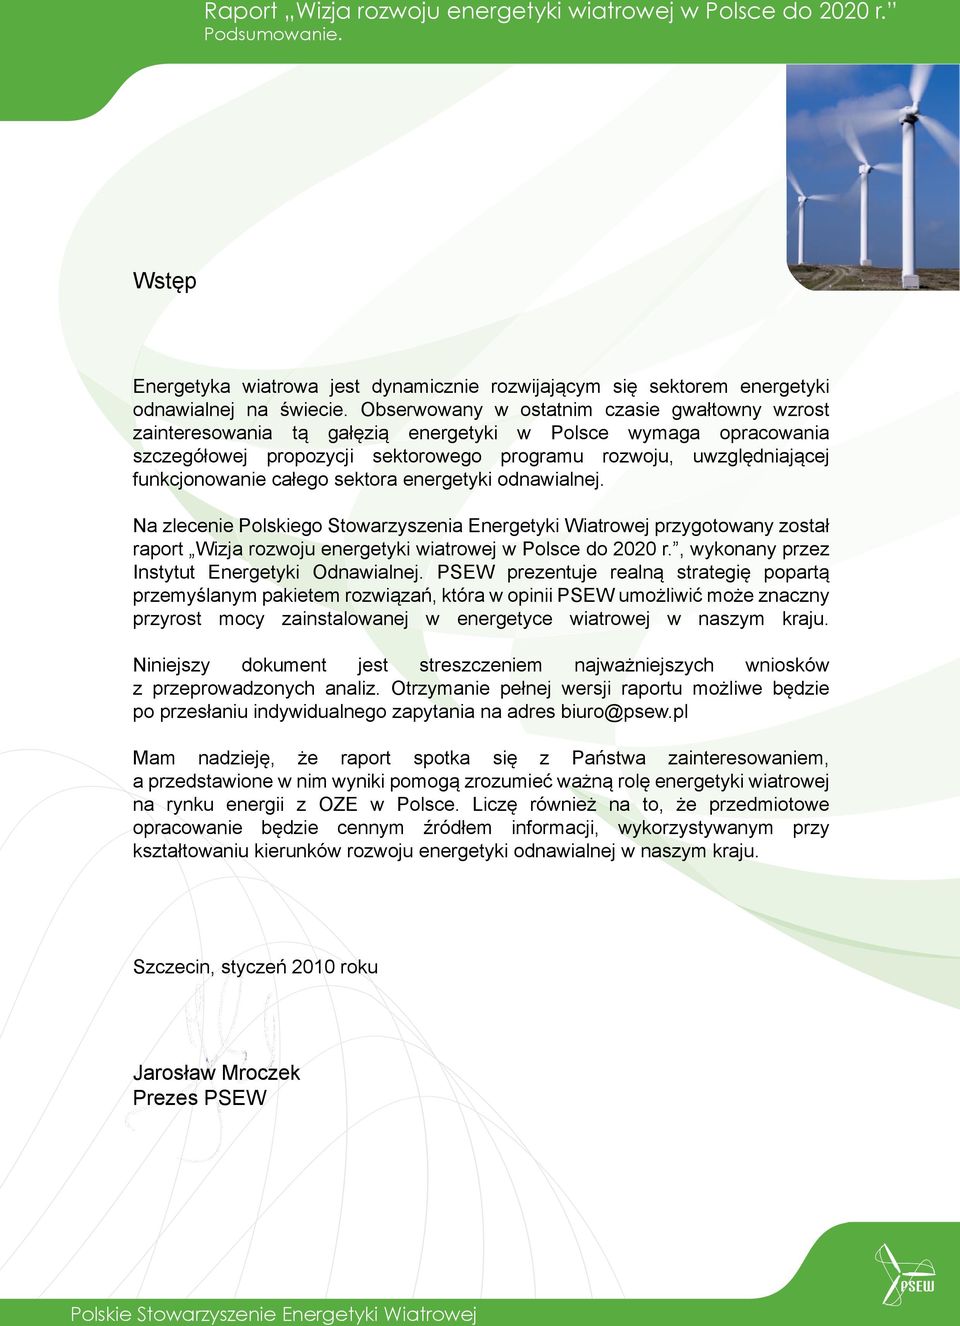 całego sektora energetyki odnawialnej. Na zlecenie Polskiego Stowarzyszenia Energetyki Wiatrowej przygotowany został raport Wizja rozwoju energetyki wiatrowej w Polsce do 2020 r.